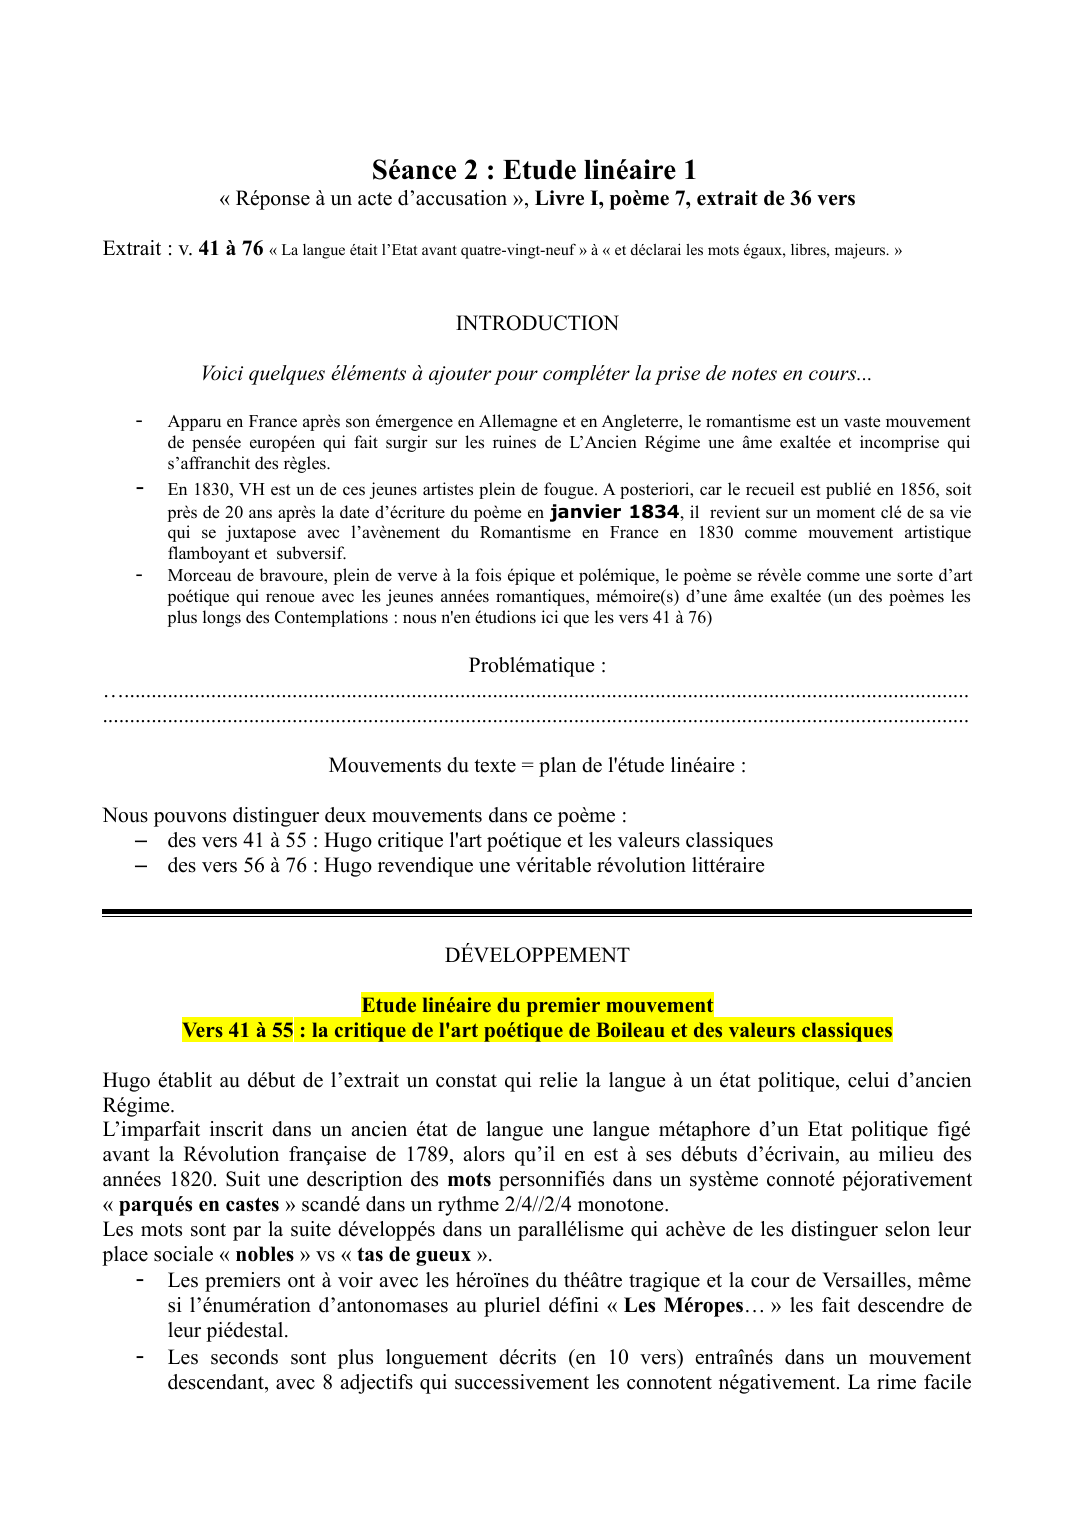 Prévisualisation du document Réponse à un acte d'accusation Etude linéaire (Hugo)